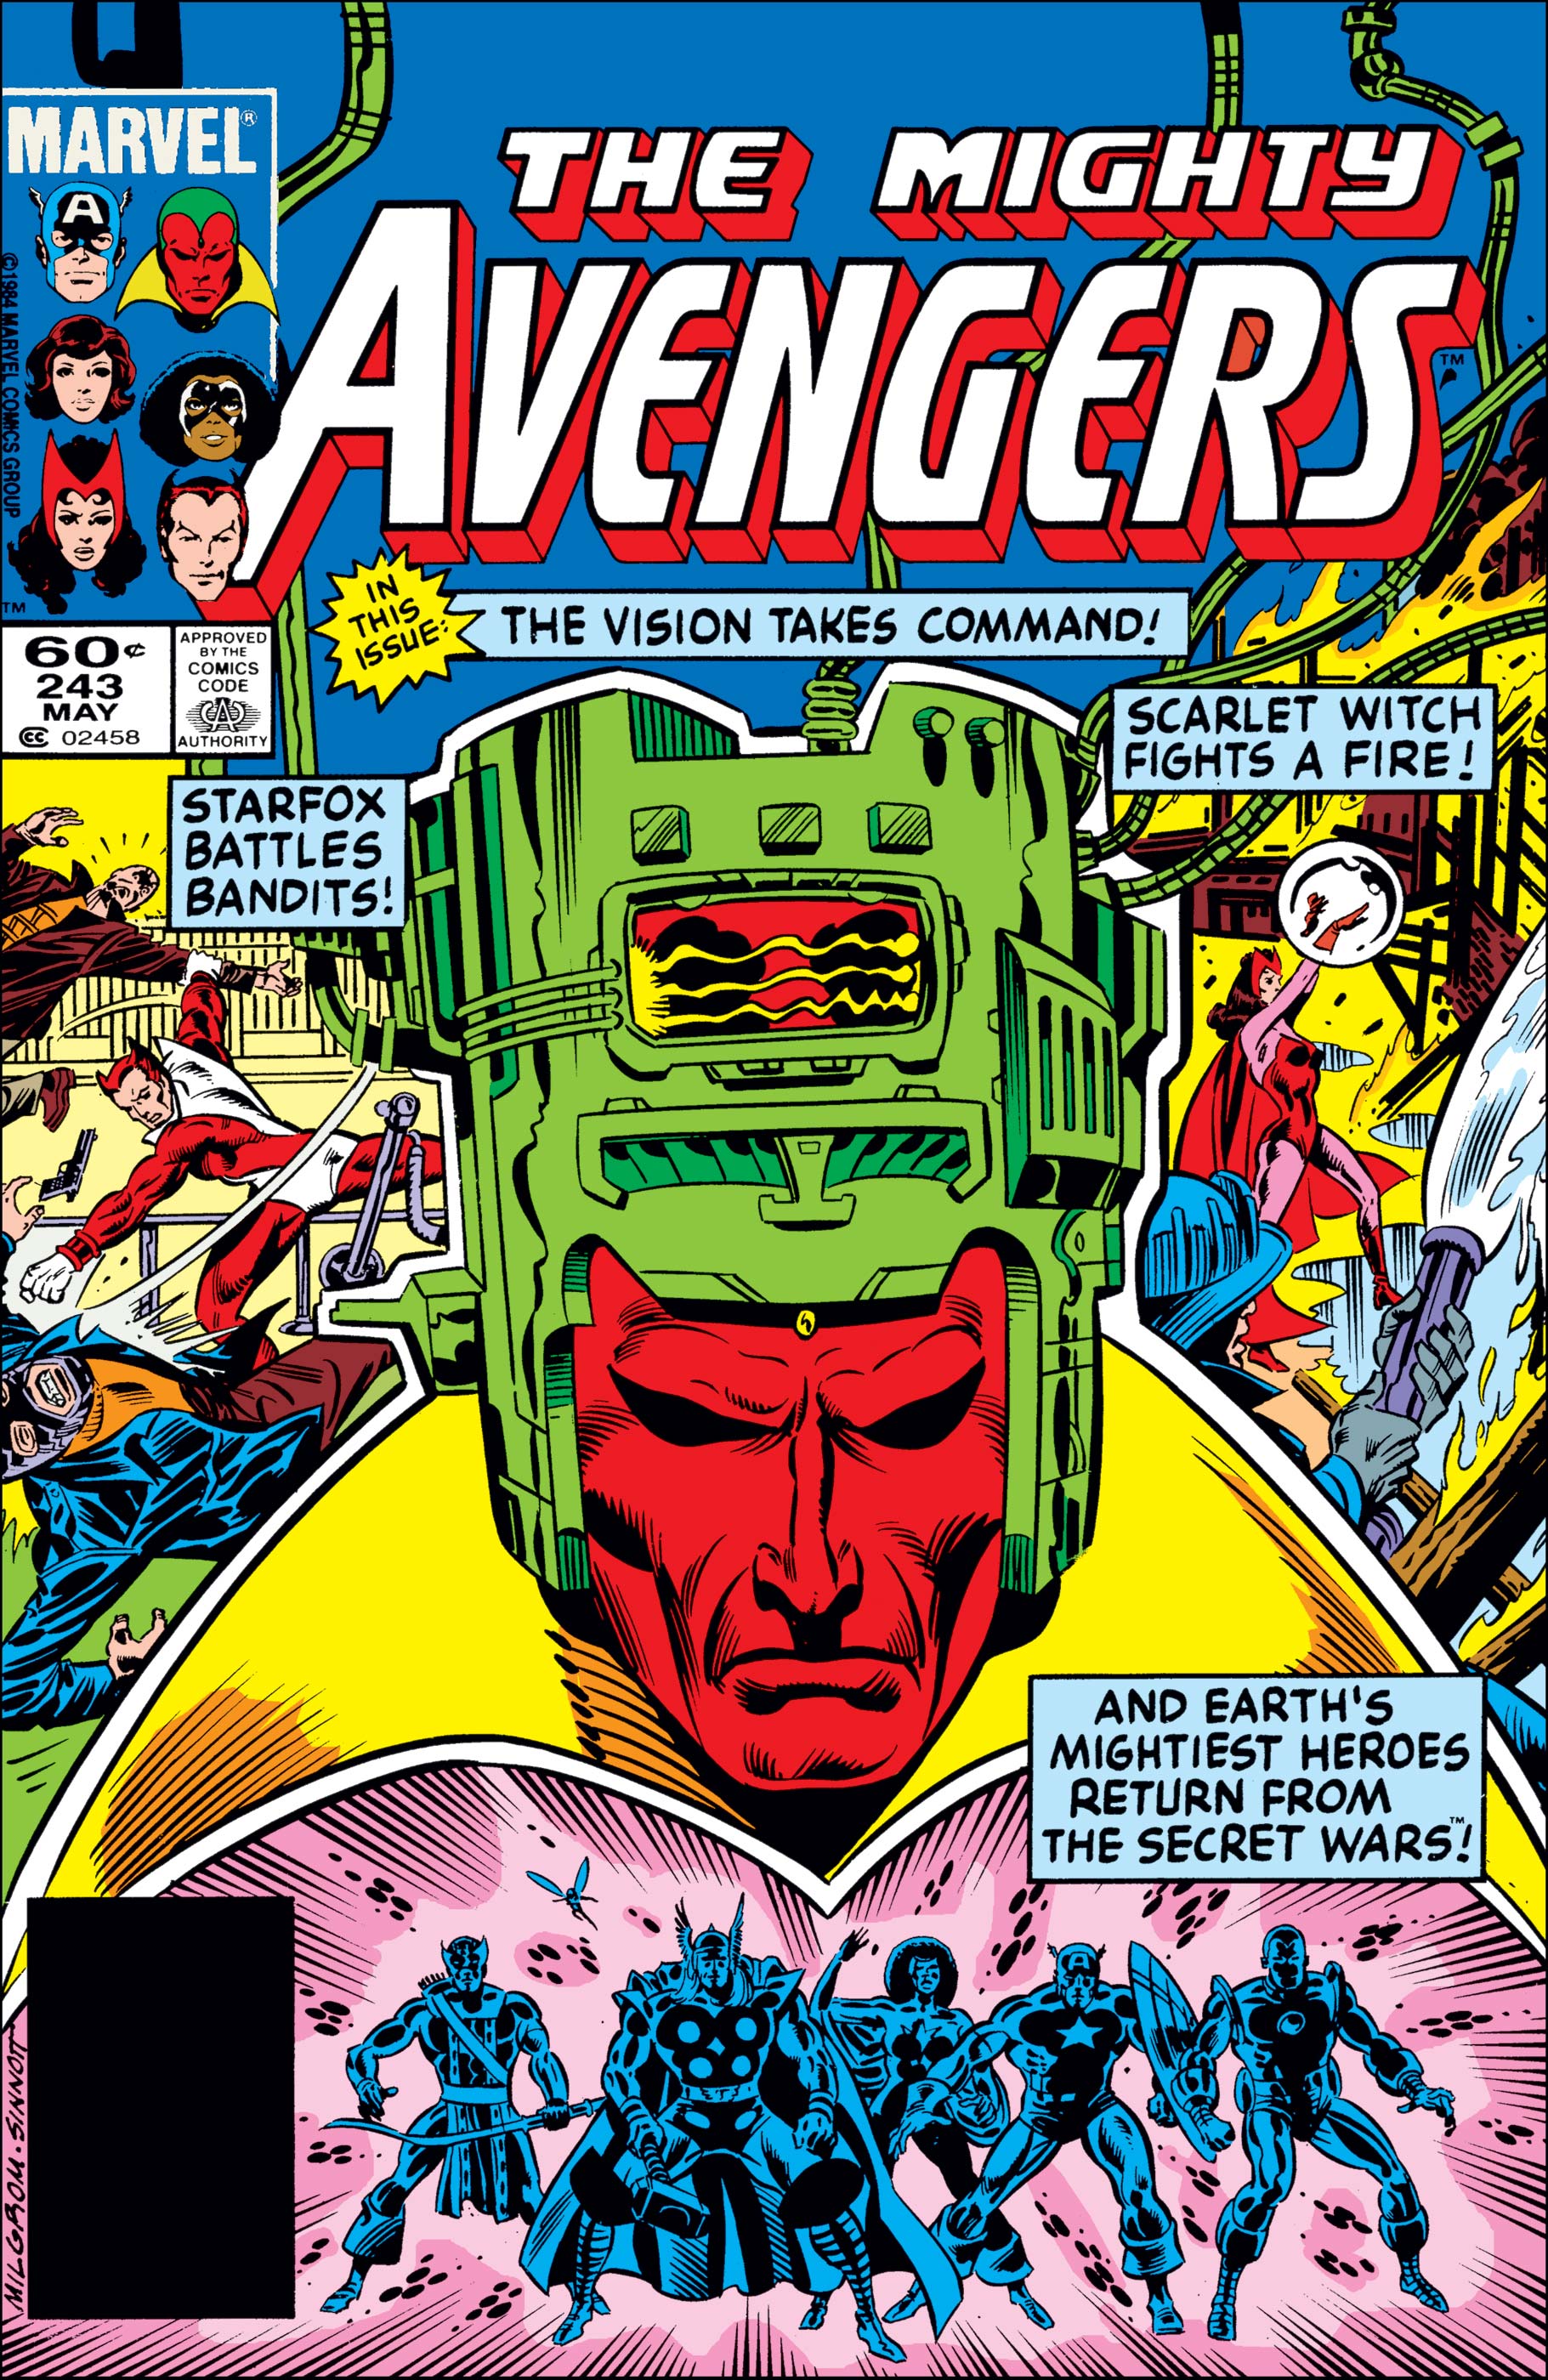 Avengers (1963) #243